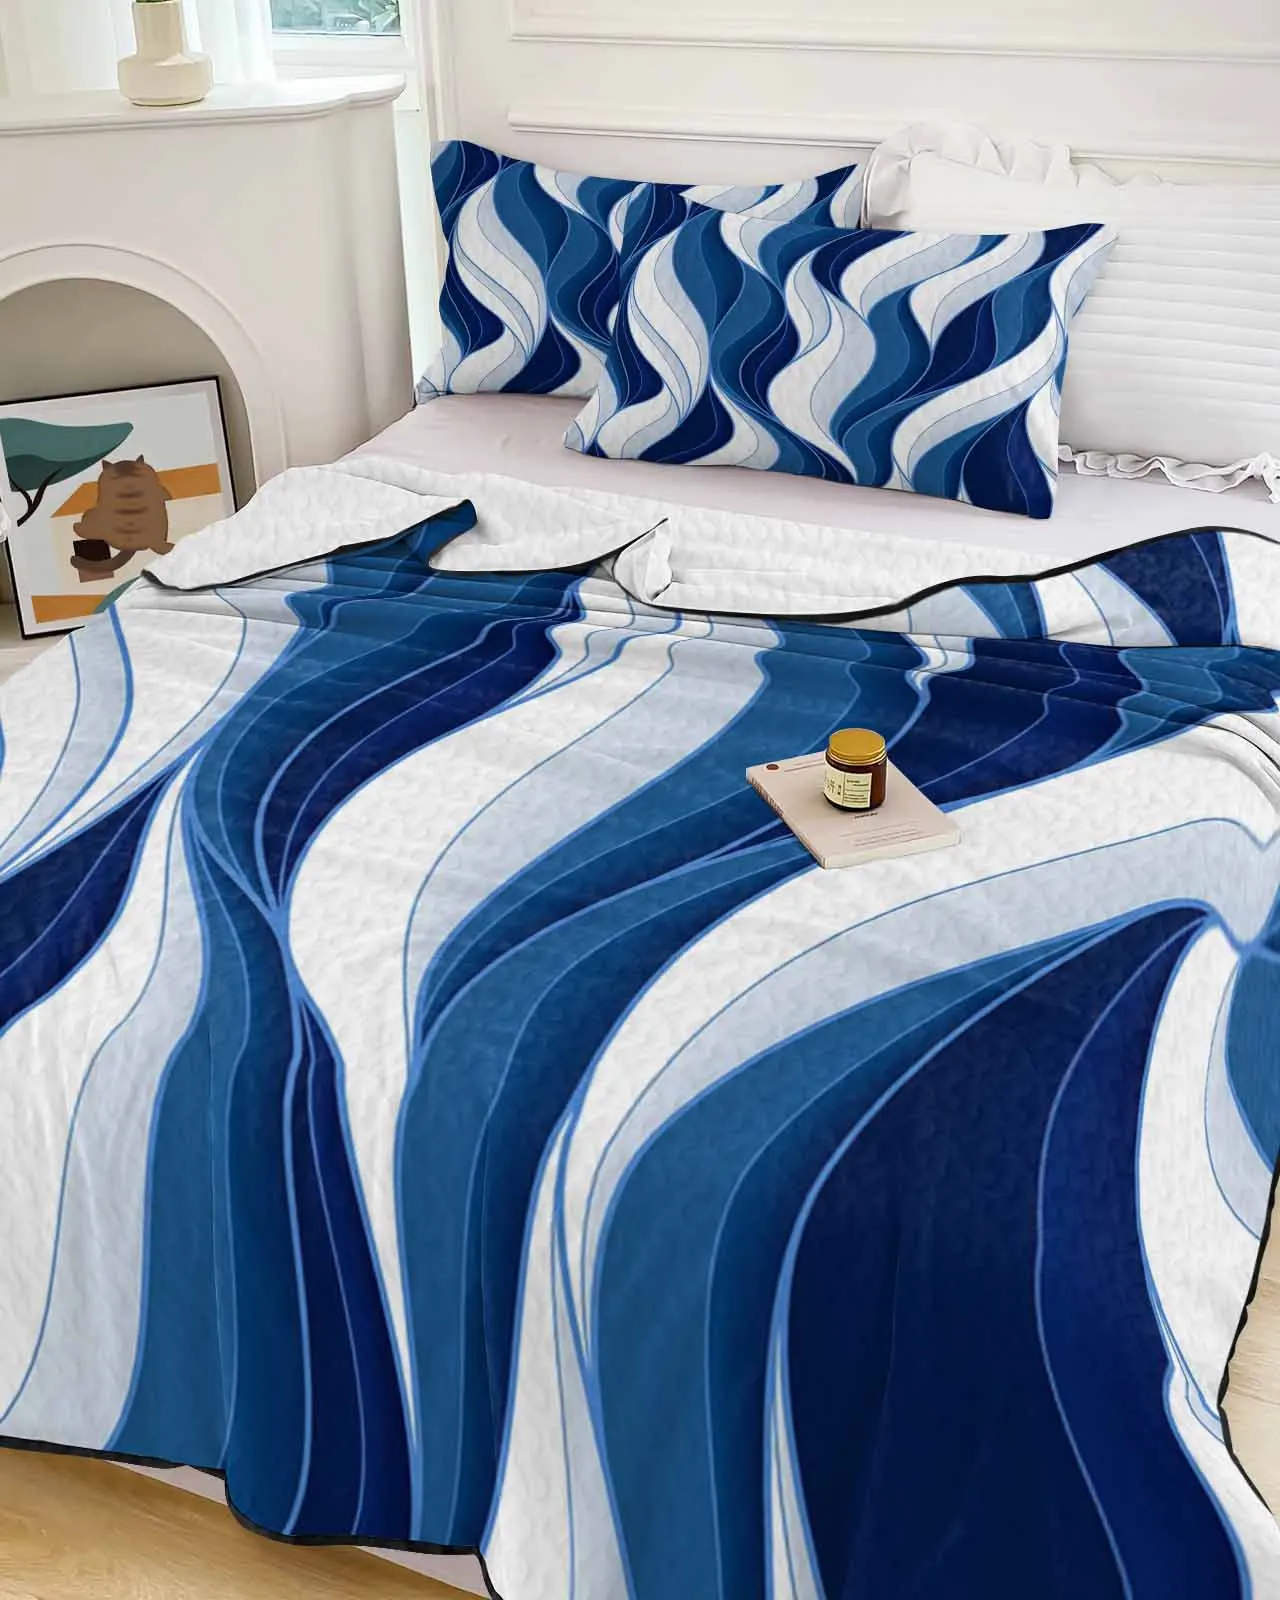 

Темно-синее охлаждающее одеяло с волнистыми линиями, легкое летнее одеяло для кровати, дышащее мягкое тонкое одеяло